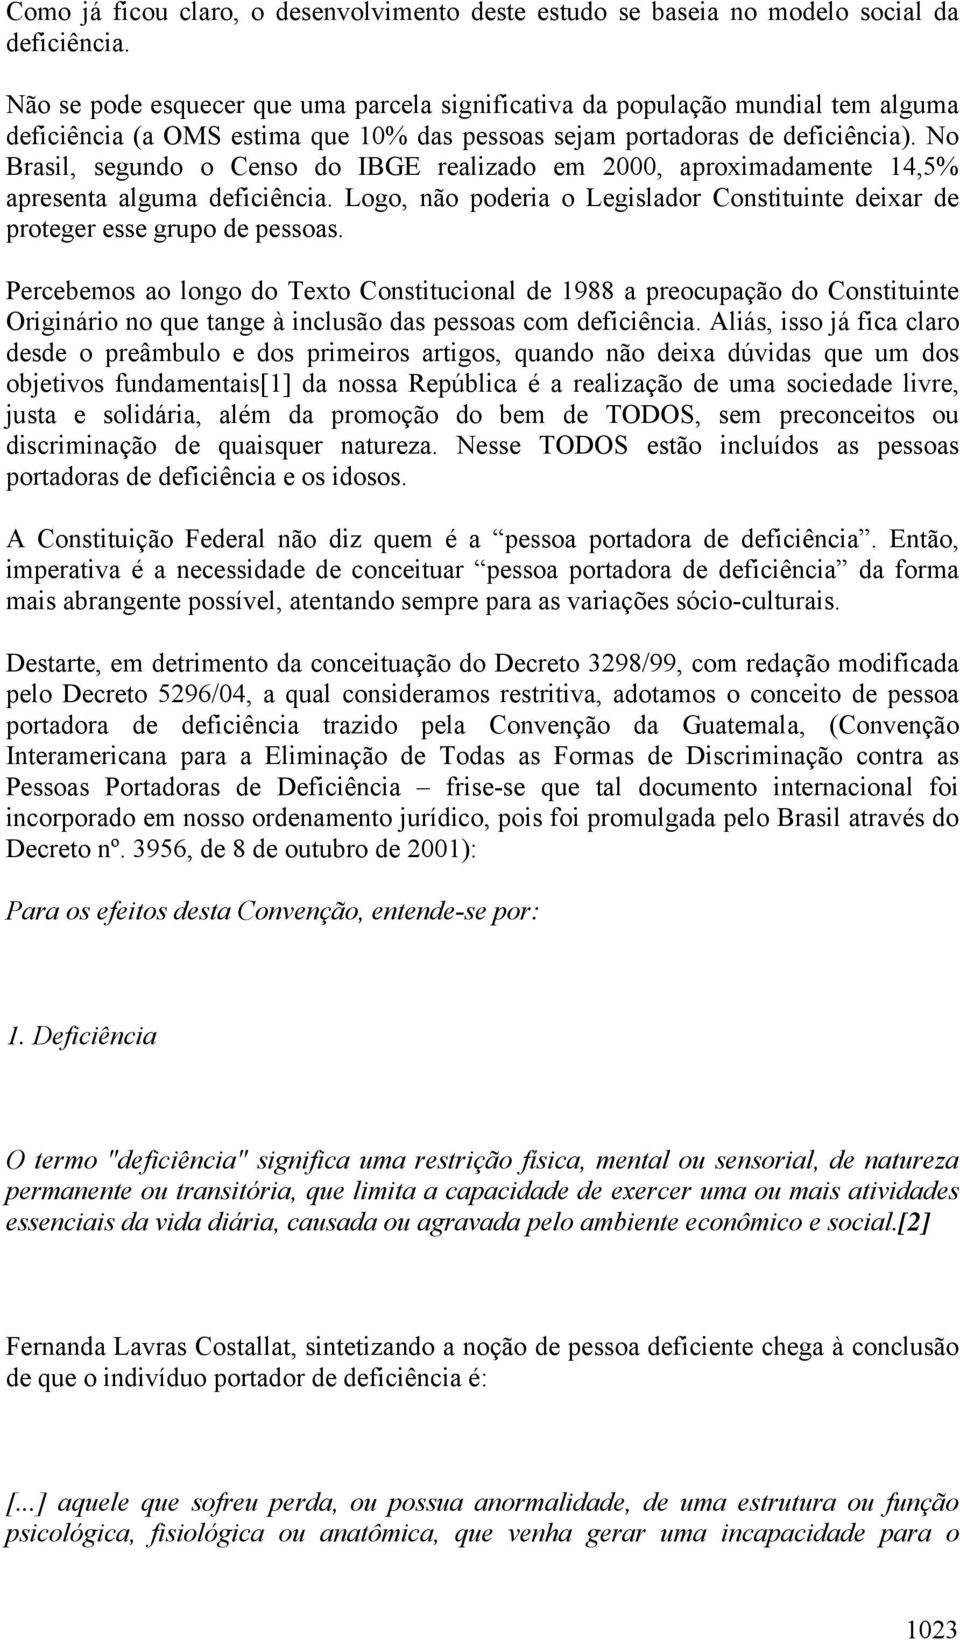 No Brasil, segundo o Censo do IBGE realizado em 2000, aproximadamente 14,5% apresenta alguma deficiência. Logo, não poderia o Legislador Constituinte deixar de proteger esse grupo de pessoas.